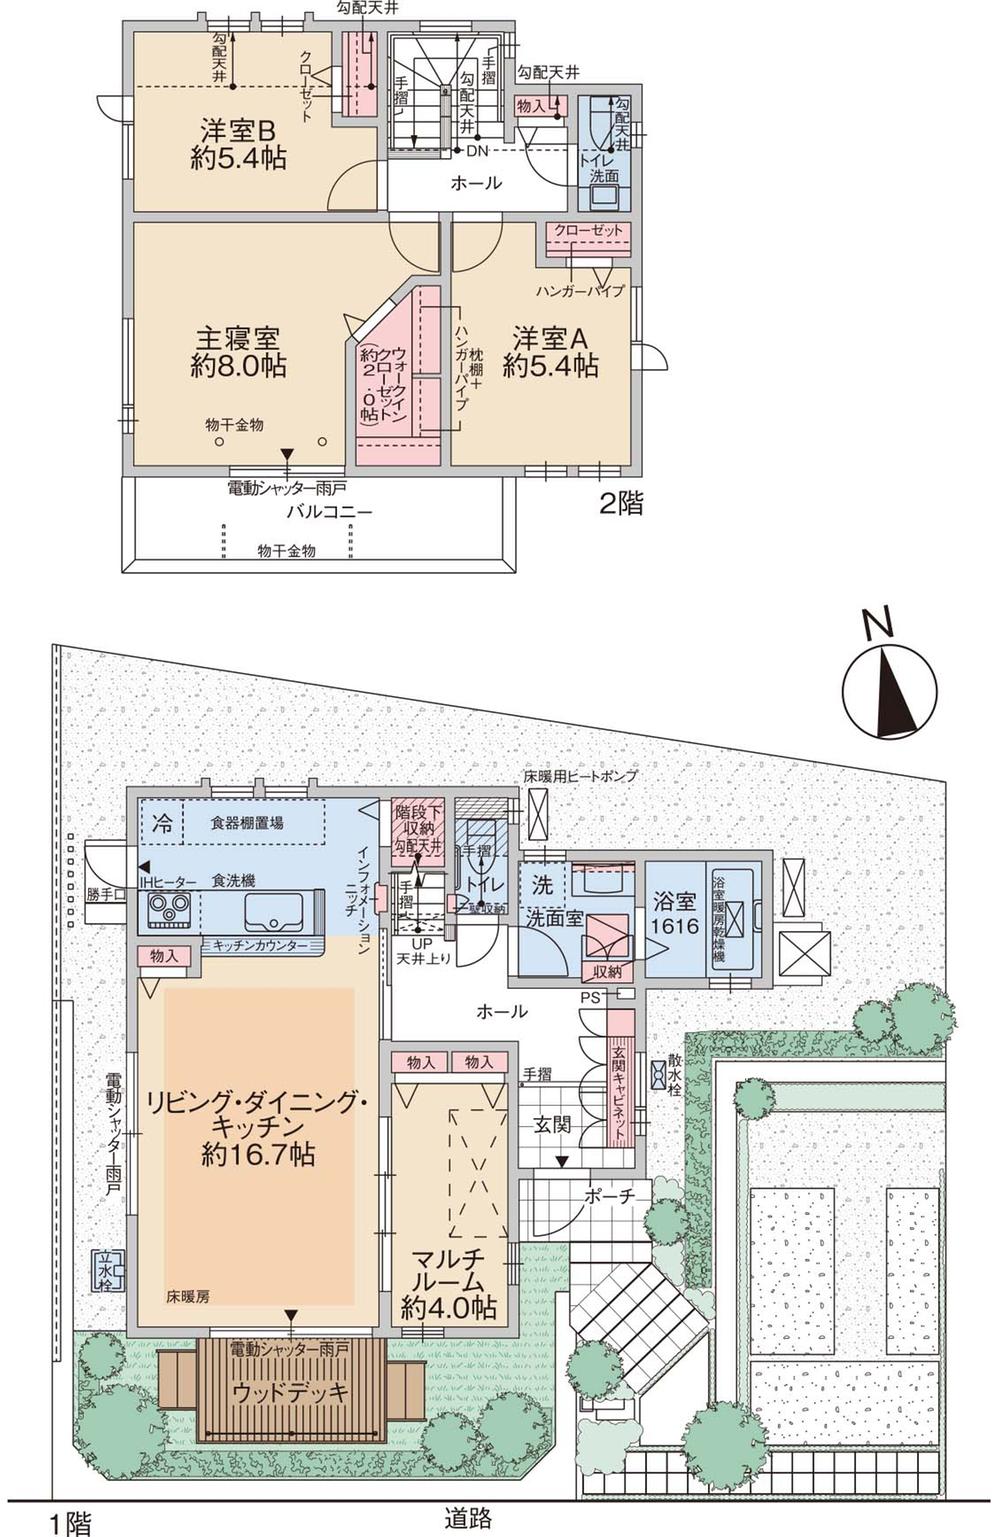 Floor plan. Keikyu kindergarten until the 1260m walk 16 minutes